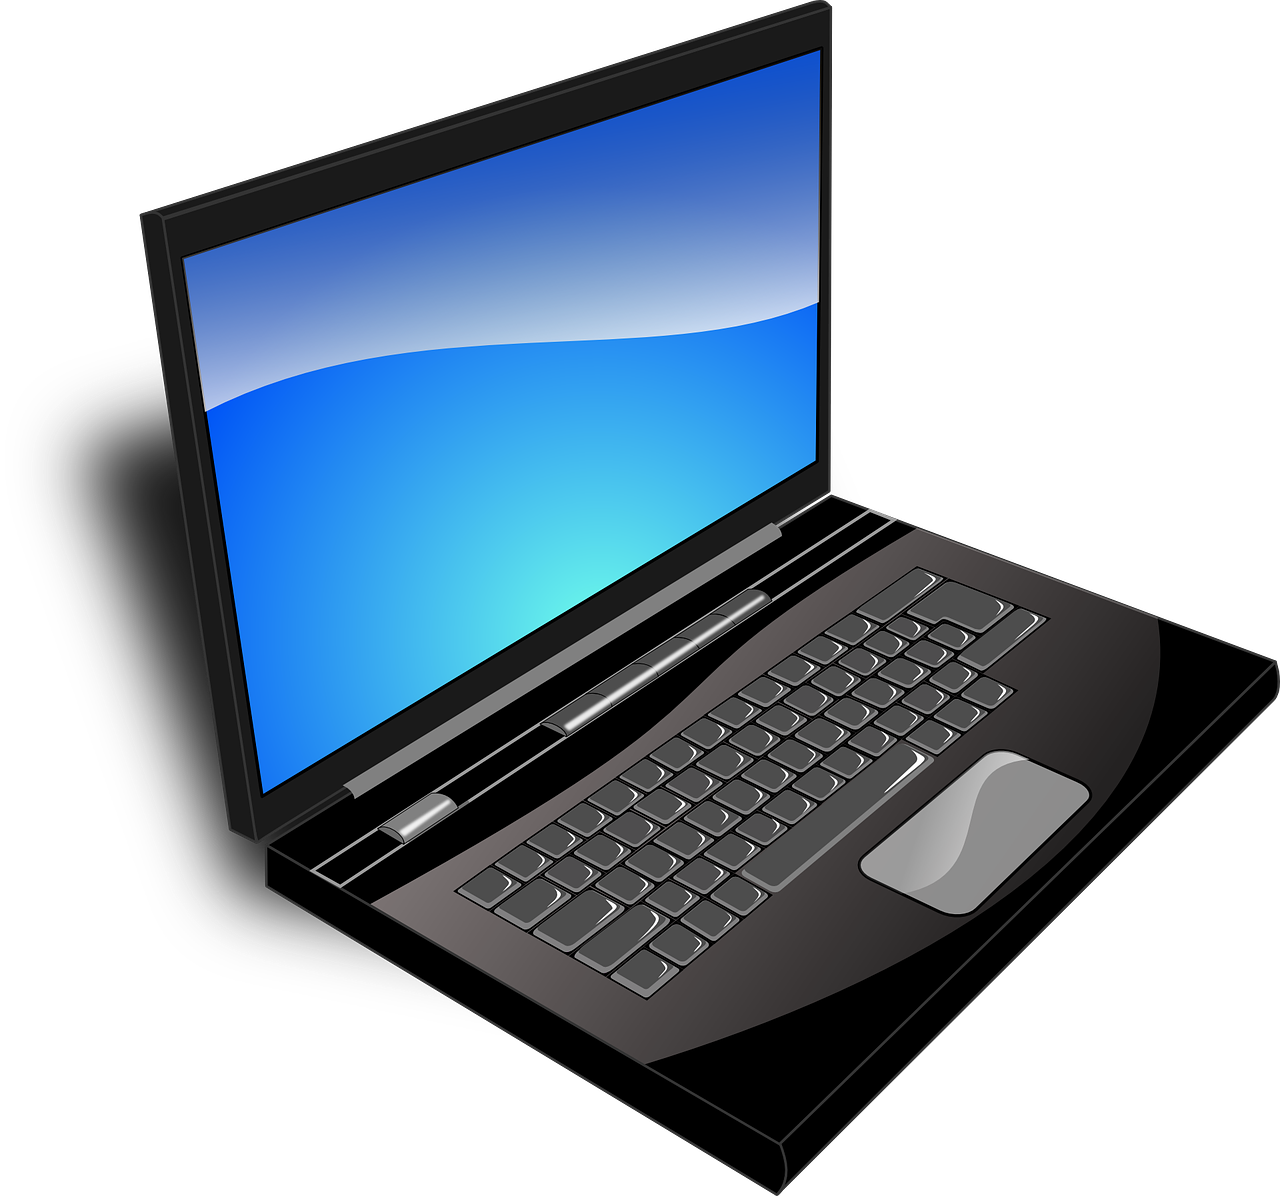 Image Credit: Pixabay.com:https://pixabay.com/en/laptop-black-blue-screen-monitor-33521/